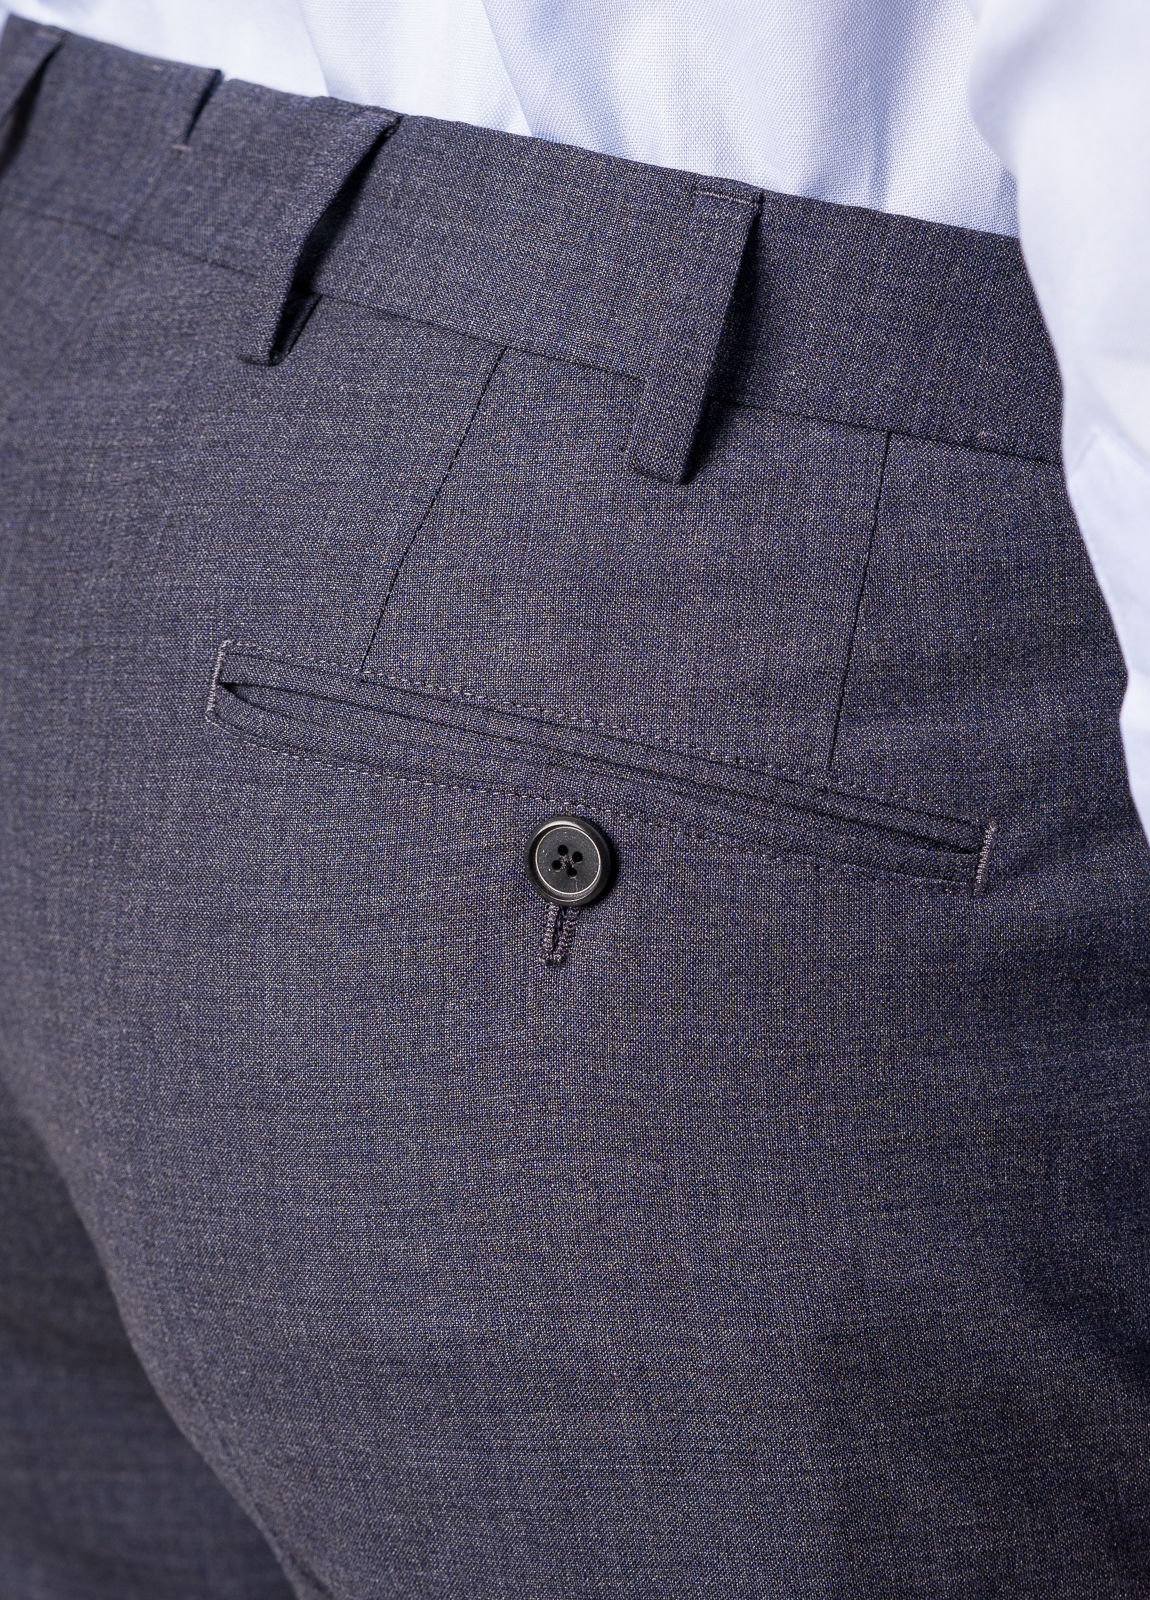 Pantalón vestir FUREST COLECCION color gris - Ítem6